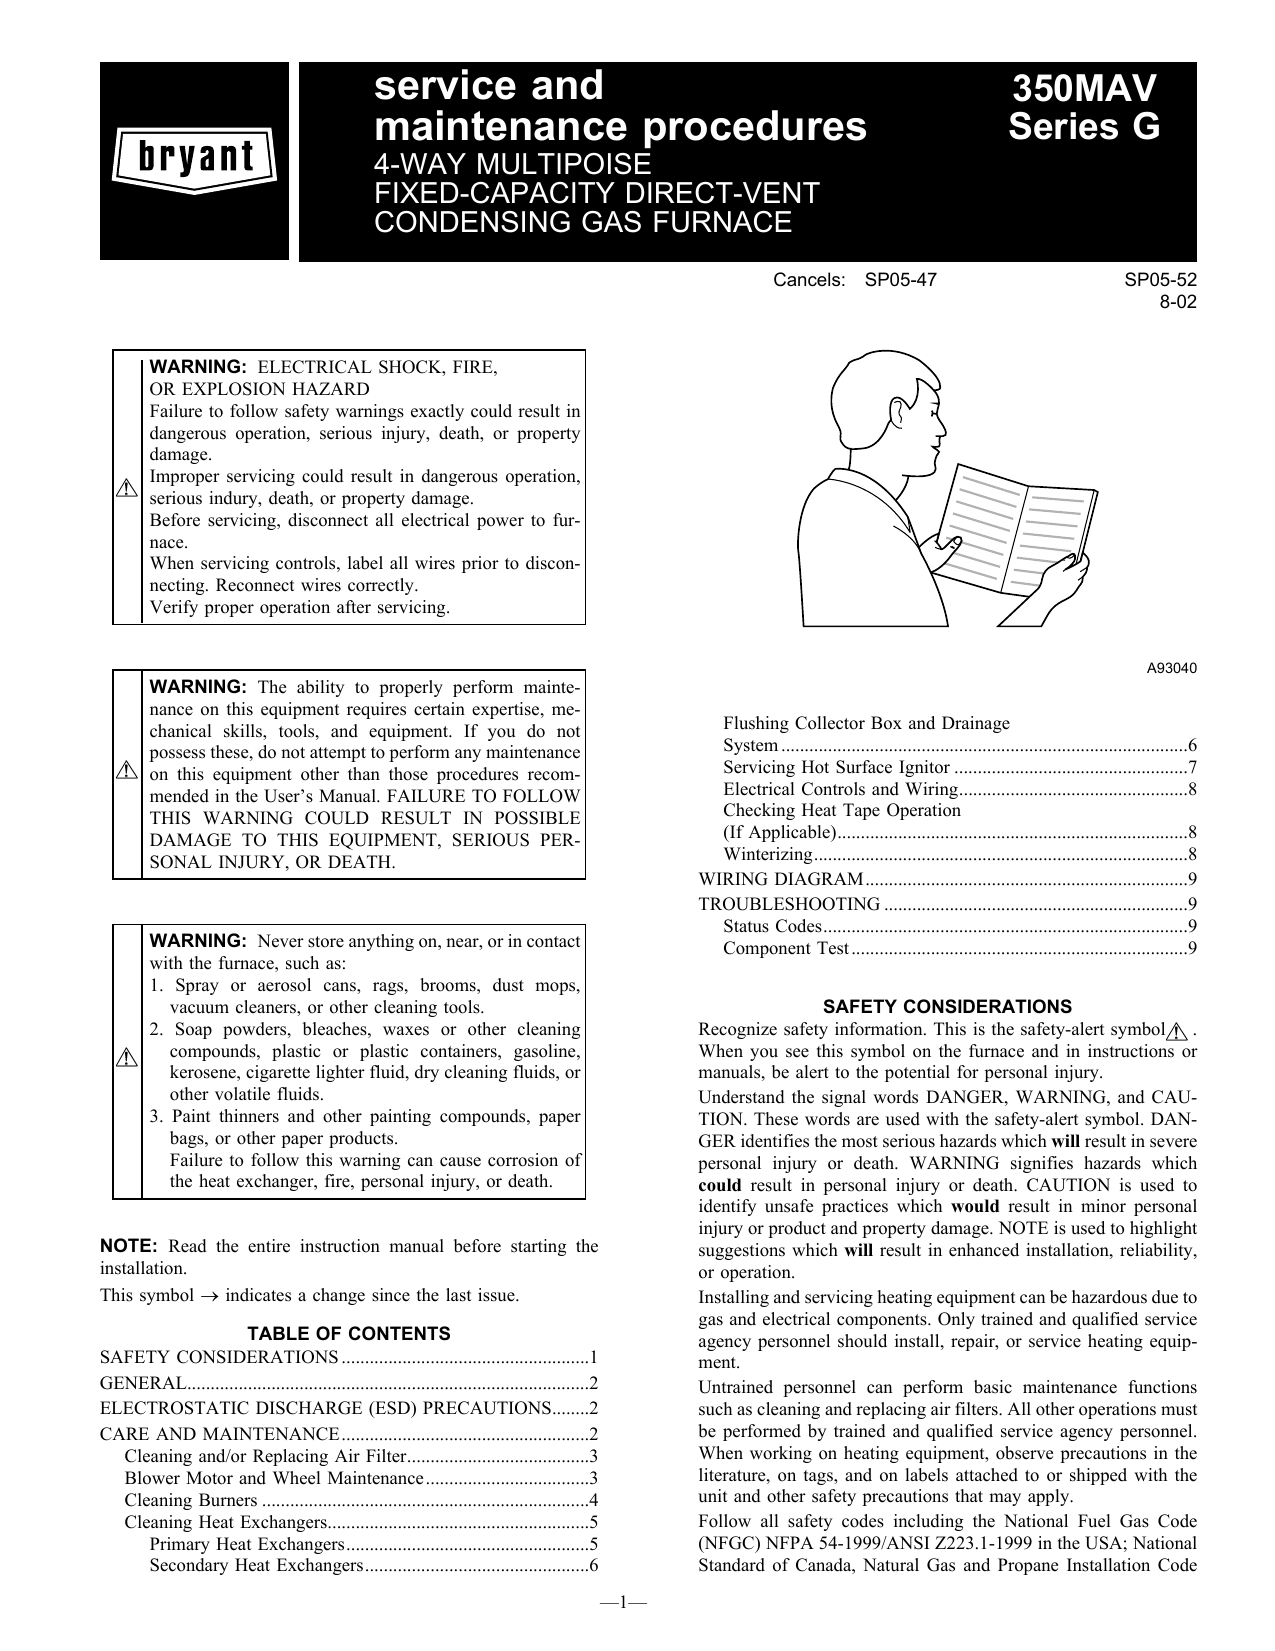 Bryant Furnace 350mav User Manual Manualzz